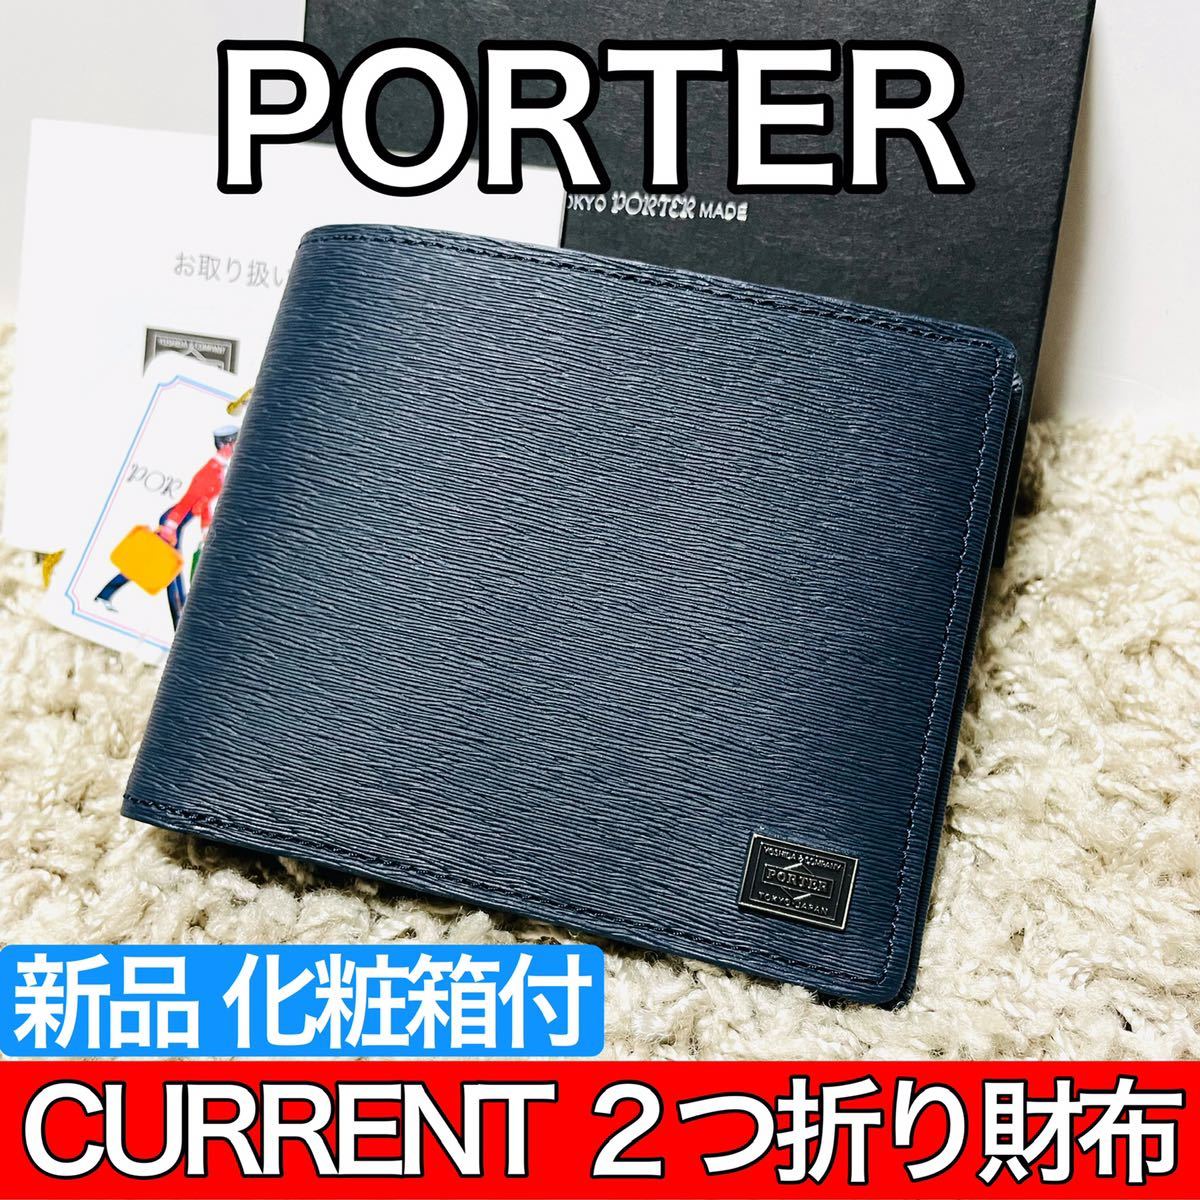 買物 PORTER porter 吉田カバン 二つ折り財布 yatesrealty.com